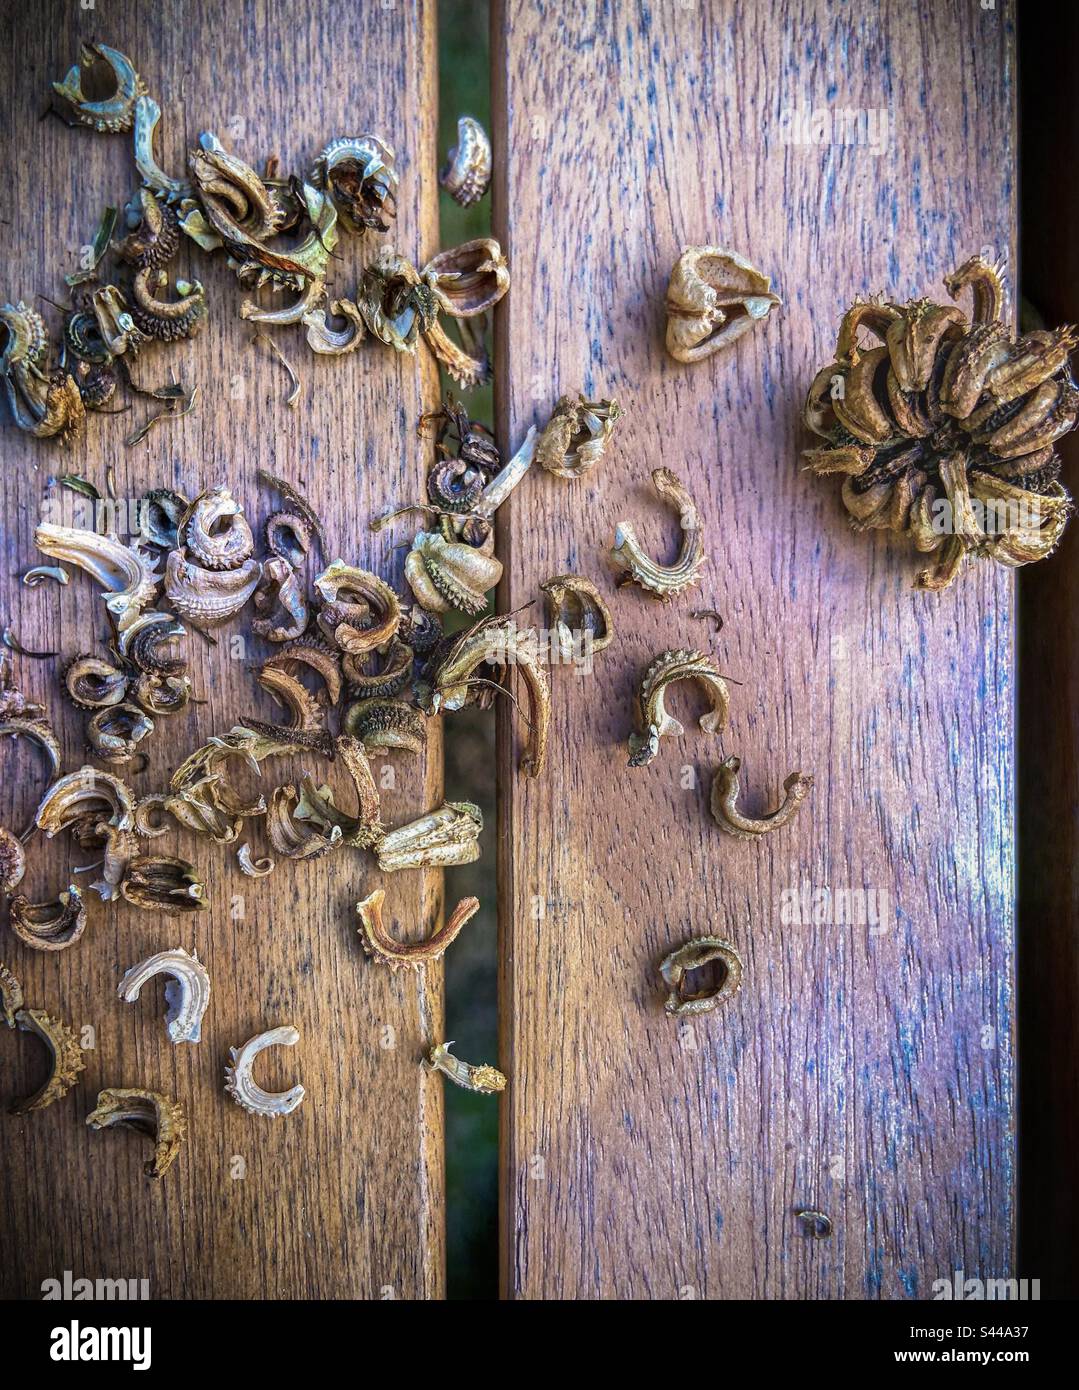 Assortimento di calendula essiccata, vasetto marigold, semi e testa di semi raccolti in autunno visto dall'alto su una vecchia tavola di legno. Serie di raccolta di semi di giardinaggio organico. Foto Stock